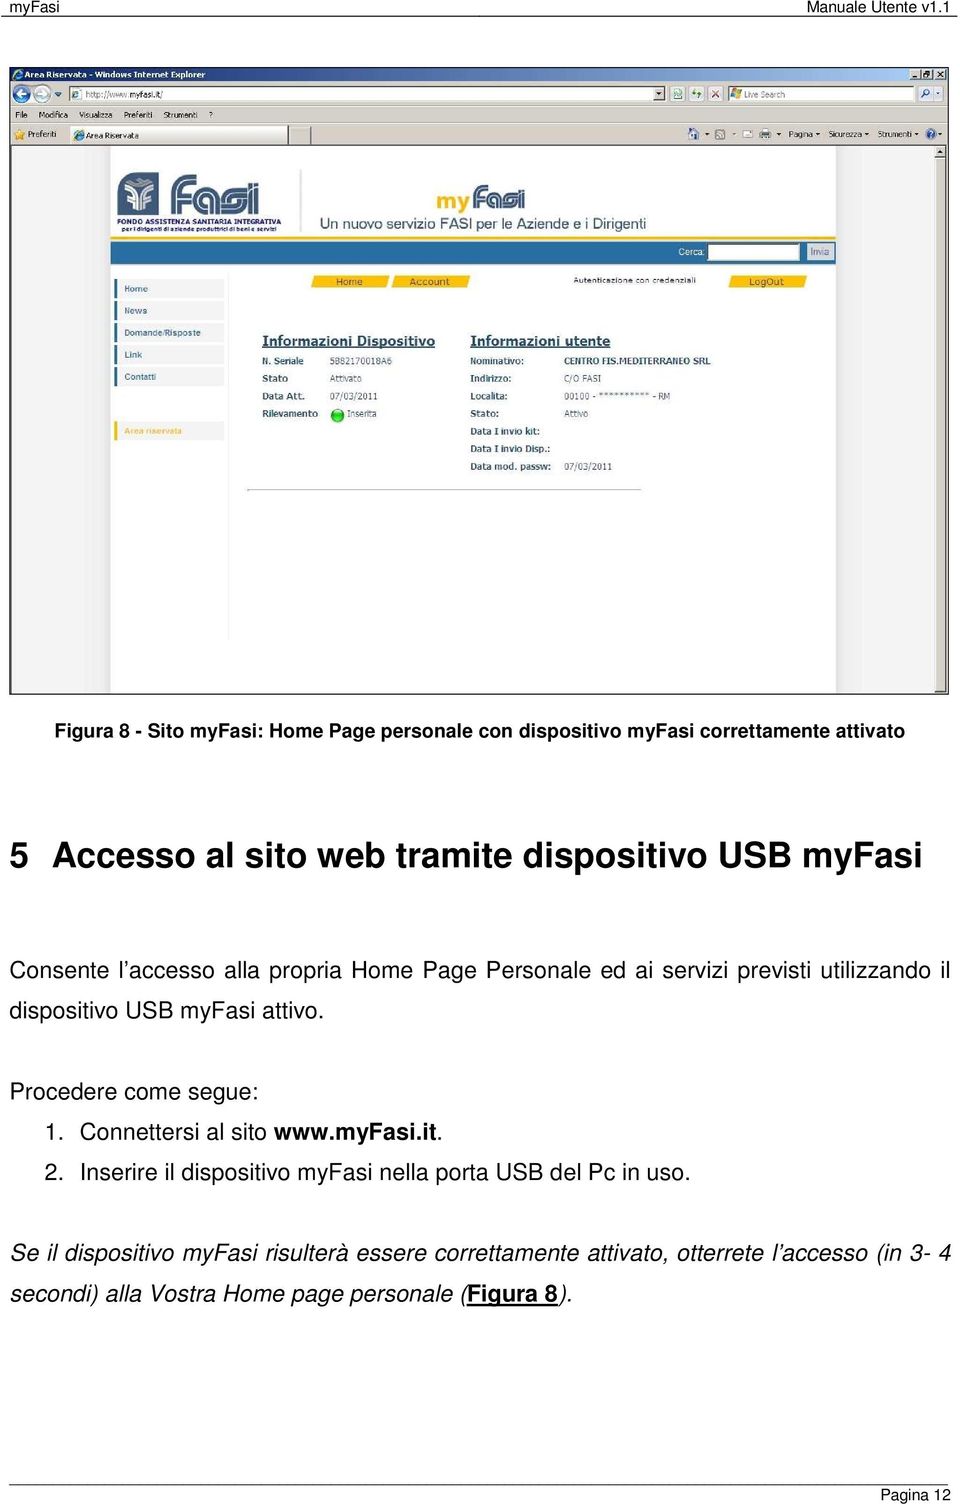 Procedere come segue: 1. Connettersi al sito www.myfasi.it. 2. Inserire il dispositivo myfasi nella porta USB del Pc in uso.